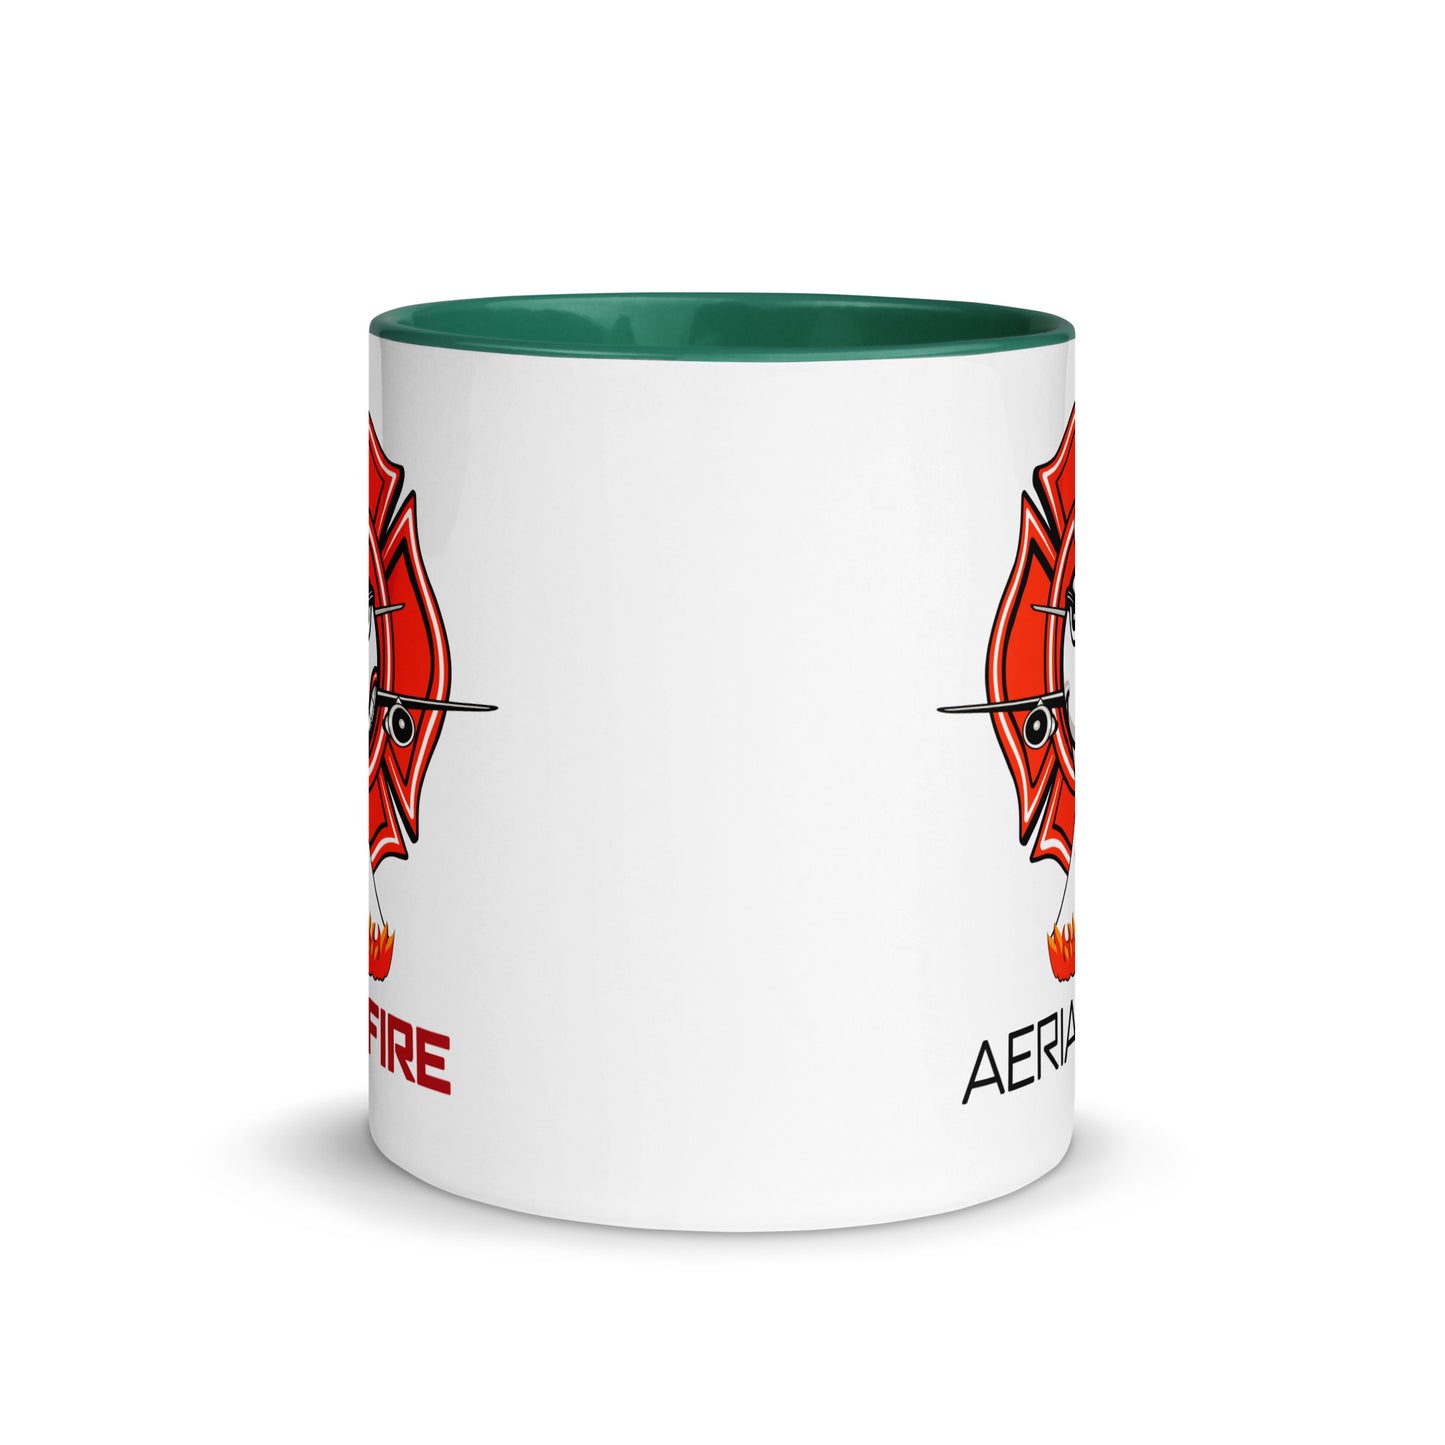 AerialFire DC-10 Cartoon Mug with Color Inside